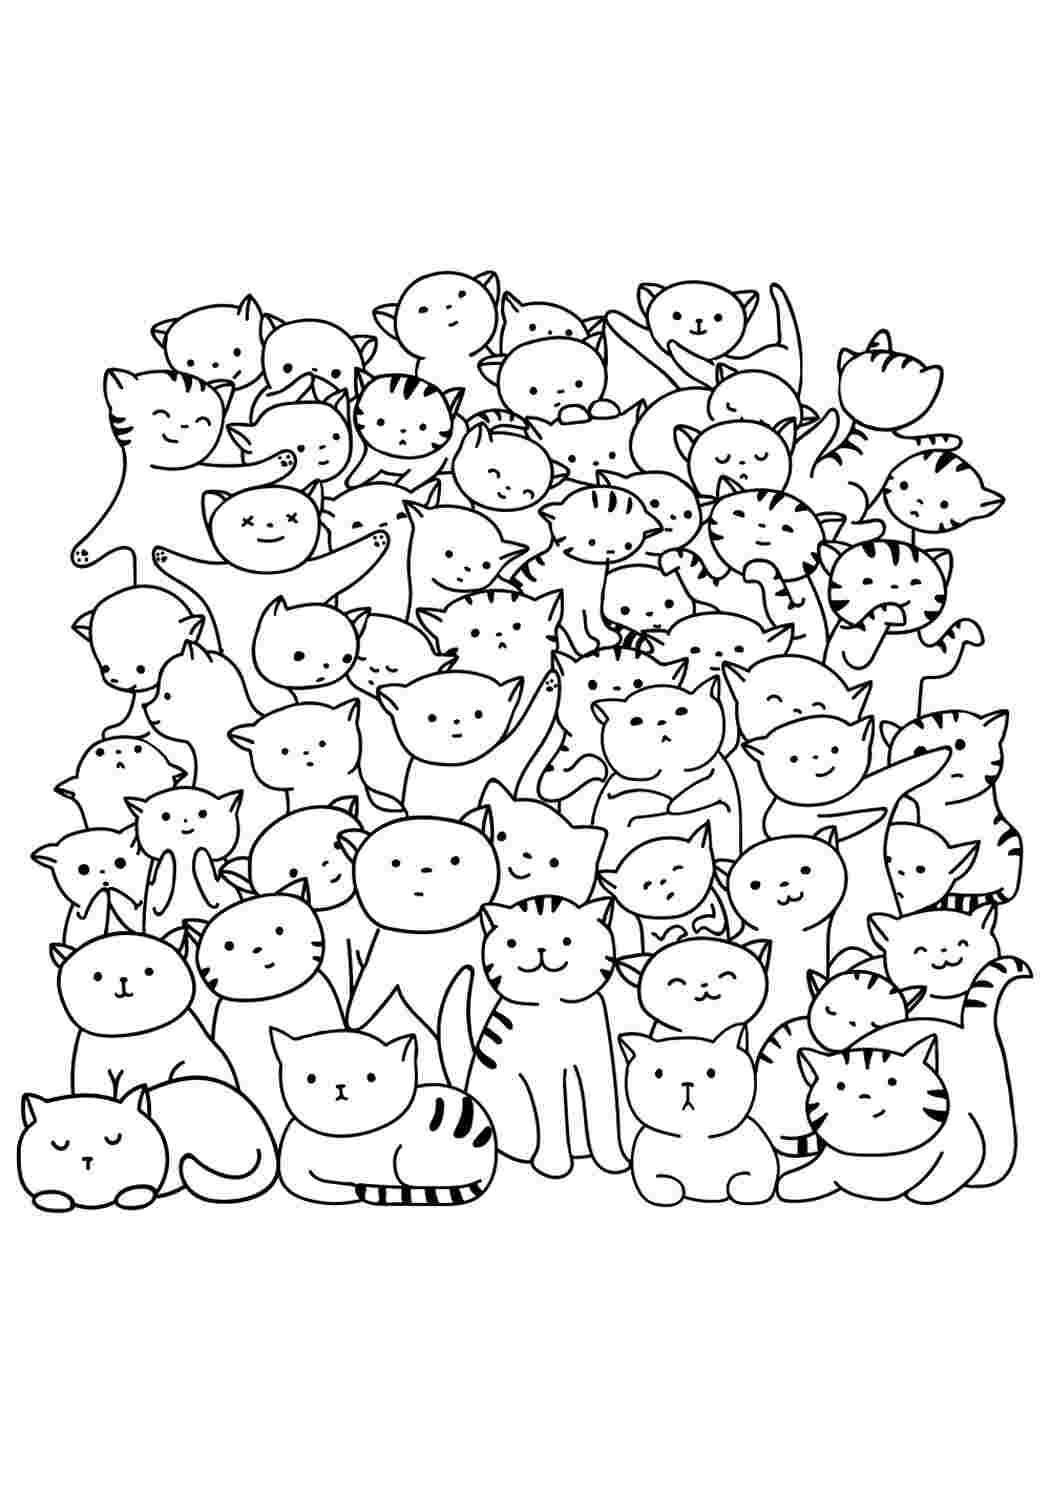 Раскраски Котята для девочек скачать и распечатать раскраски с котятами 